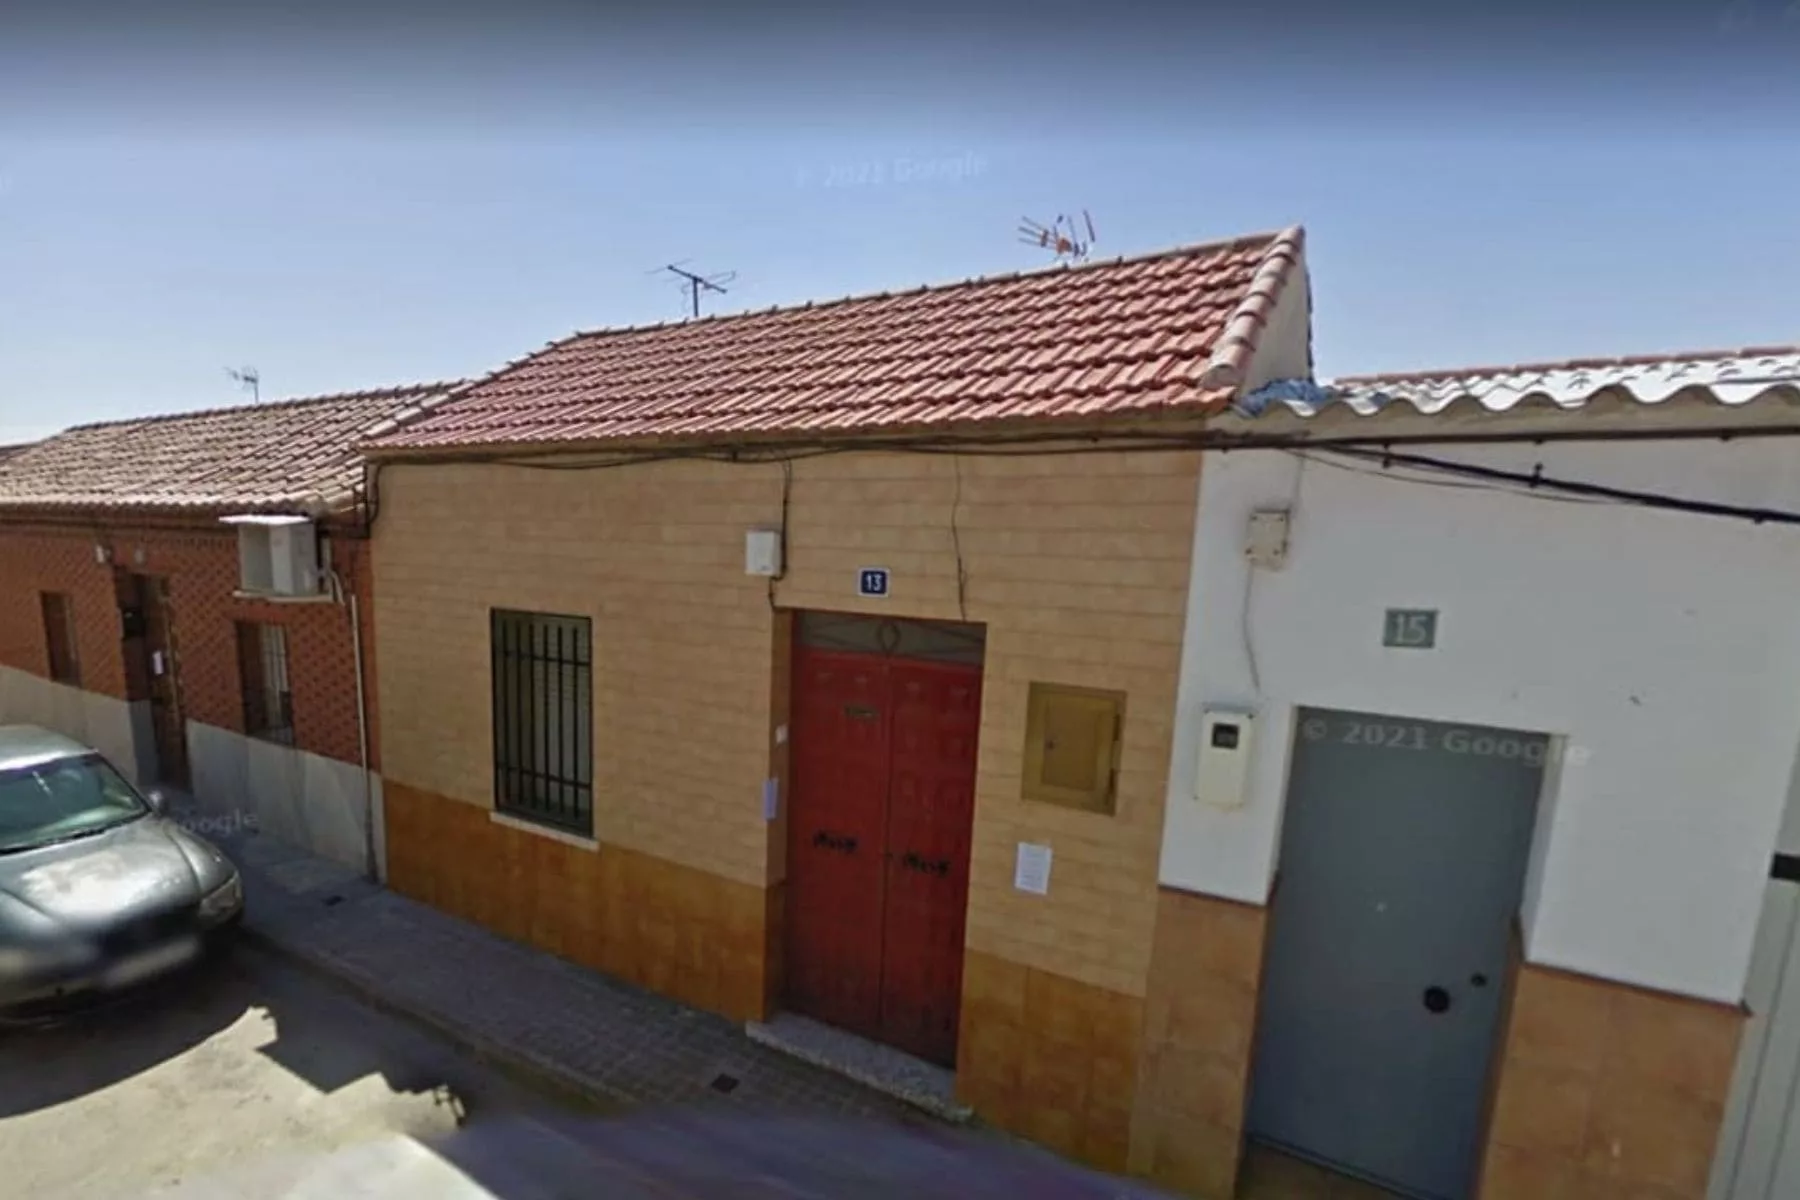 La inmobiliaria Haya tiene a la venta una casa en Puertollano por 5.000 euros 